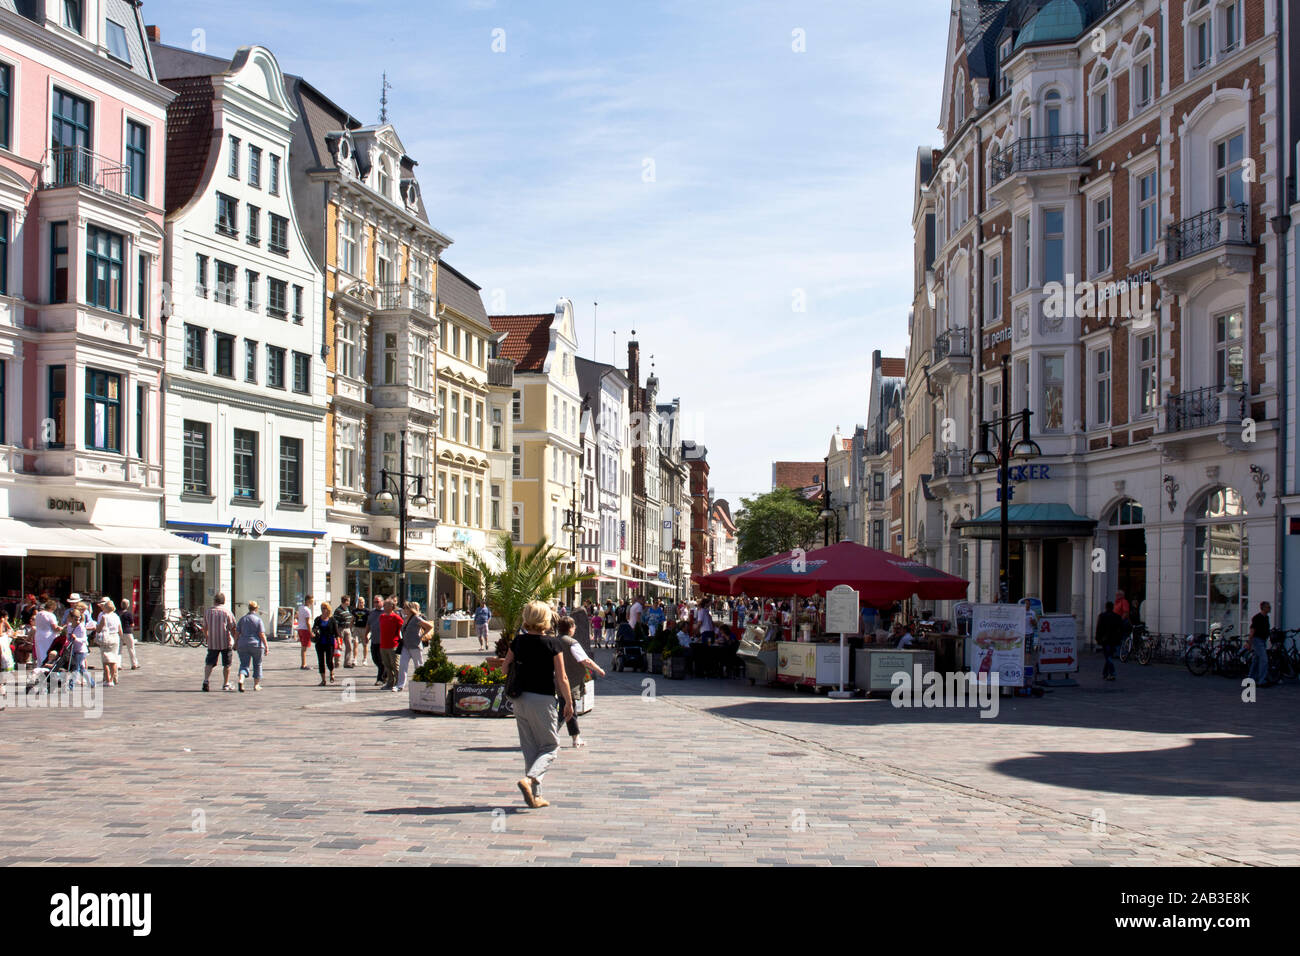 Menschen flanieren bei sommerlichen Wetter in den Einkaufsstraßen von Rostock |People stroll in summer weather in the shopping streets of Rostock| Stock Photo